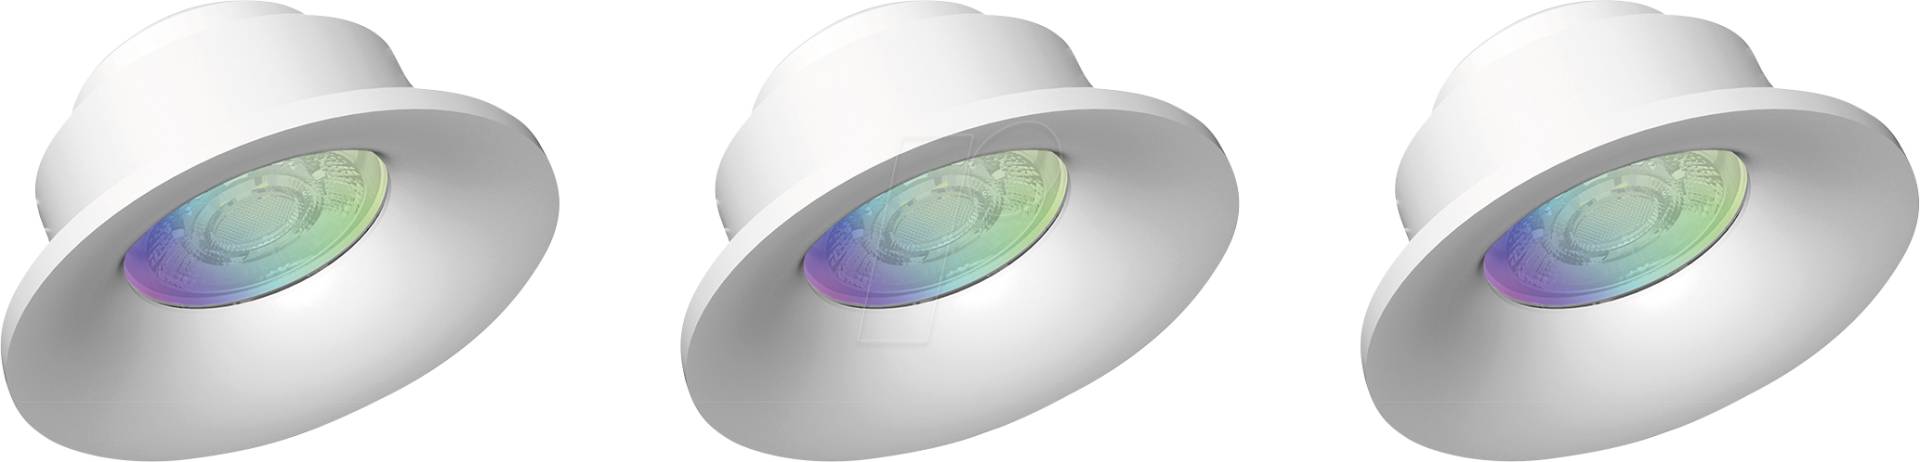 MLI 404051 - Smart Light, tint, Einbauspots, RGBW, 3er-Pack von TINT